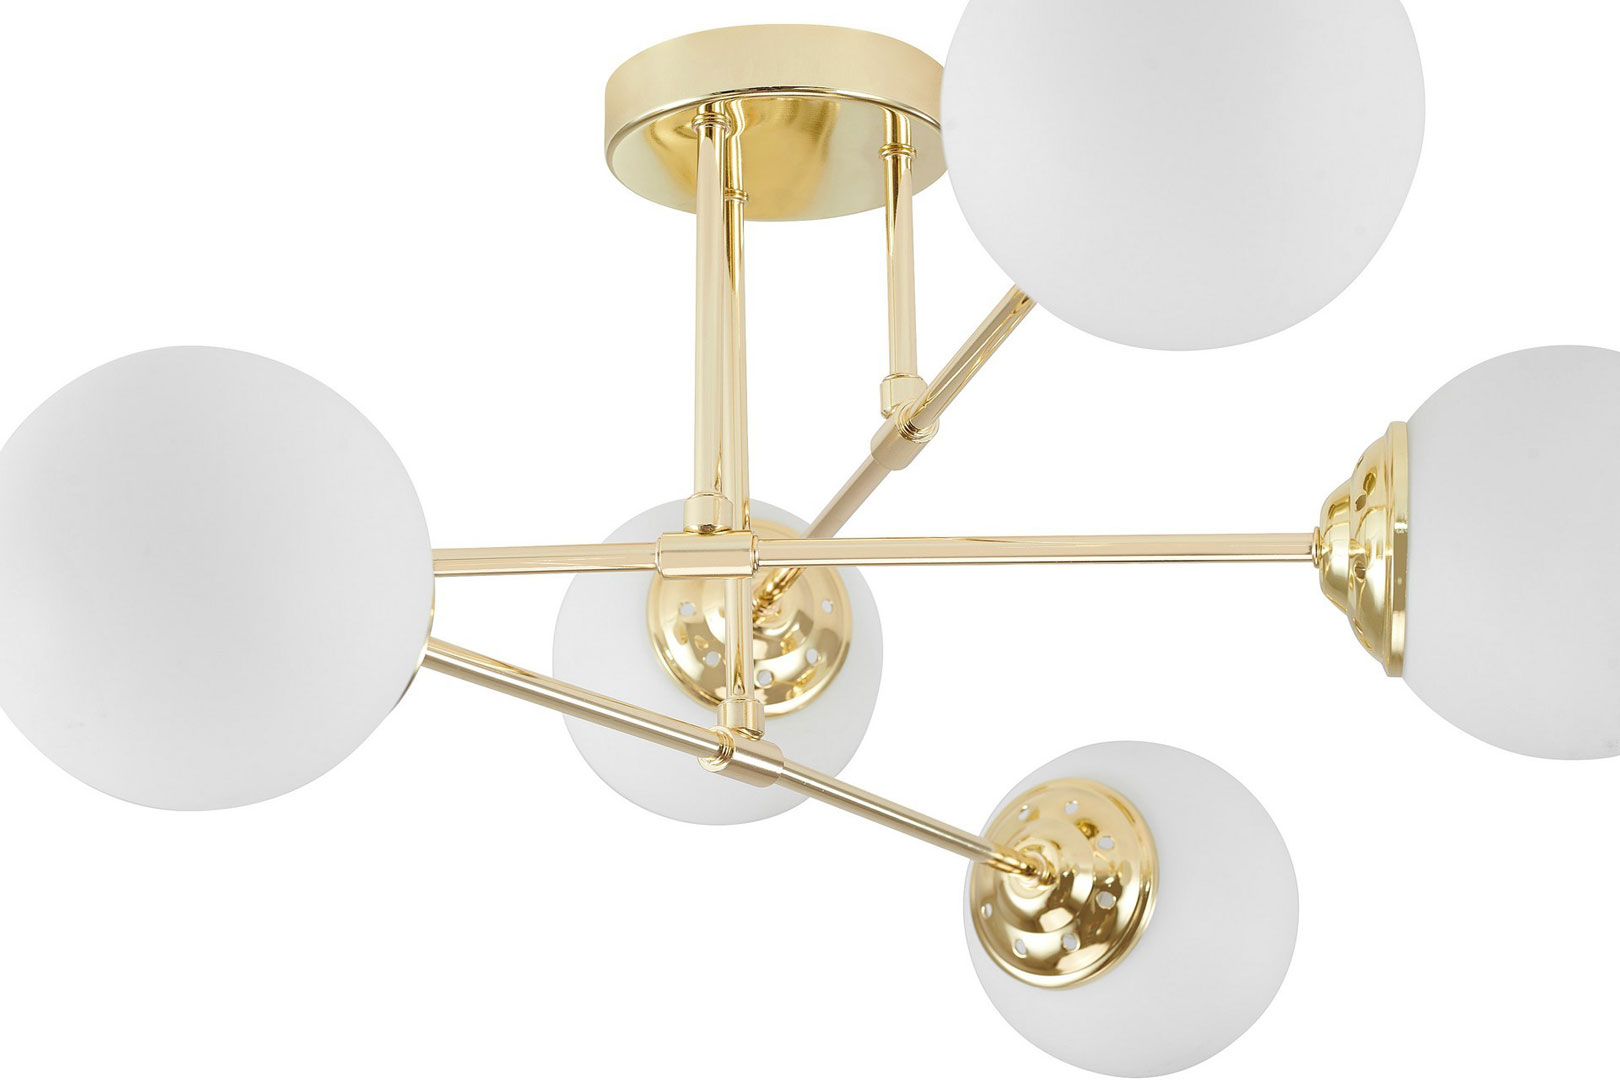 Zlaté stropní svítidlo, asymetrický tvar, kovové trubice, bílé koule, klasická zlatá barva - FINO - Lampit obrázek 4